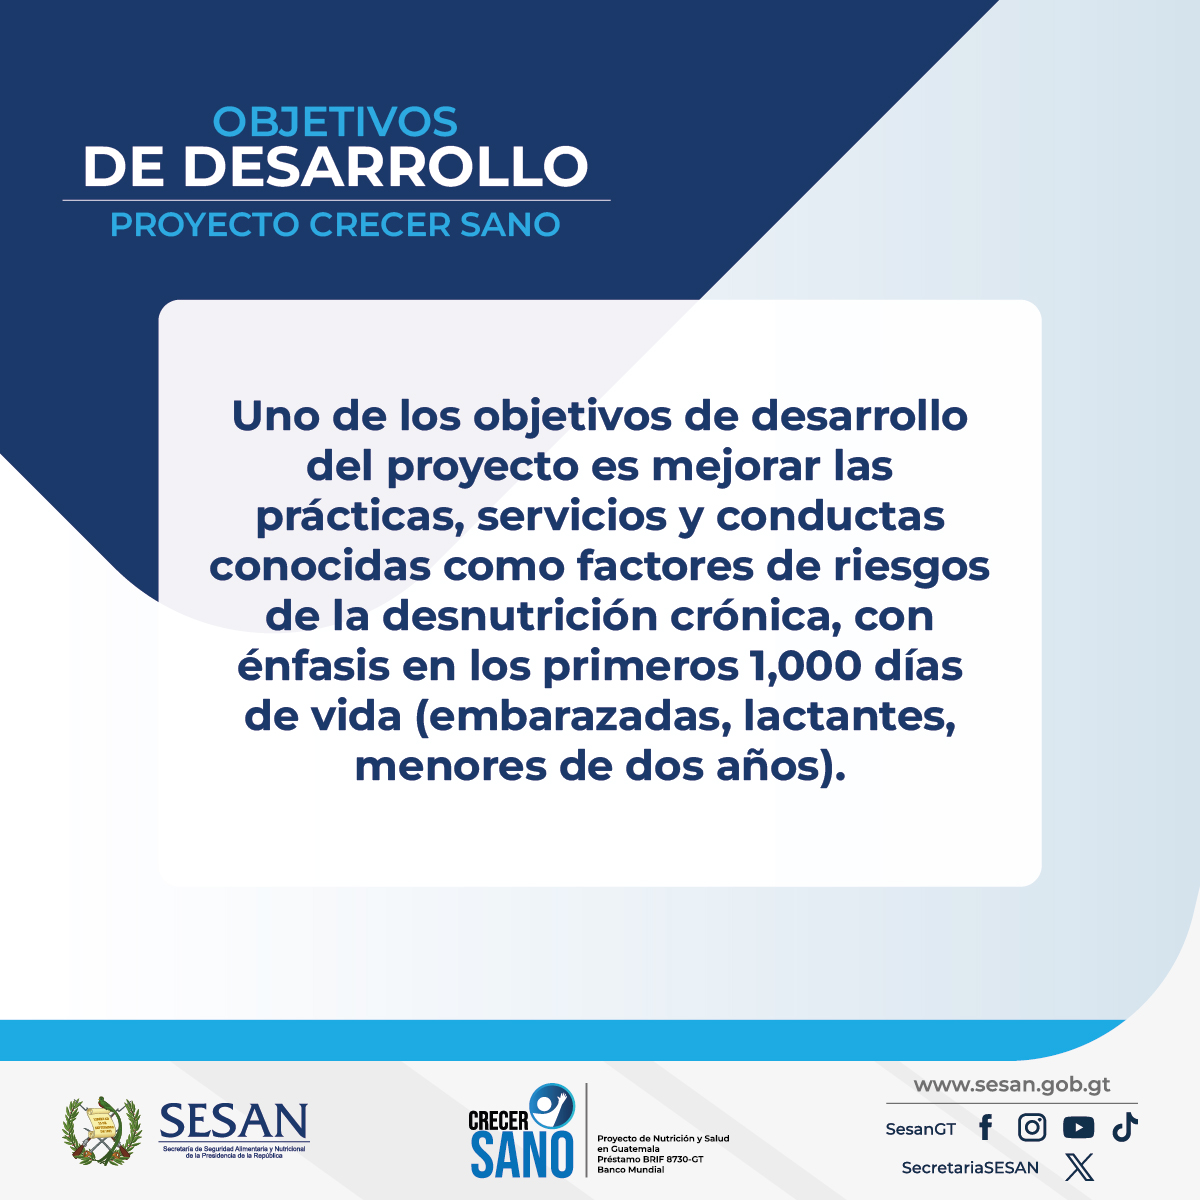 ☑️ #CrecerSano tiene como objetivo reducir los factores de riesgo para la desnutrición crónica, enfocándose en los primeros mil días de vida.